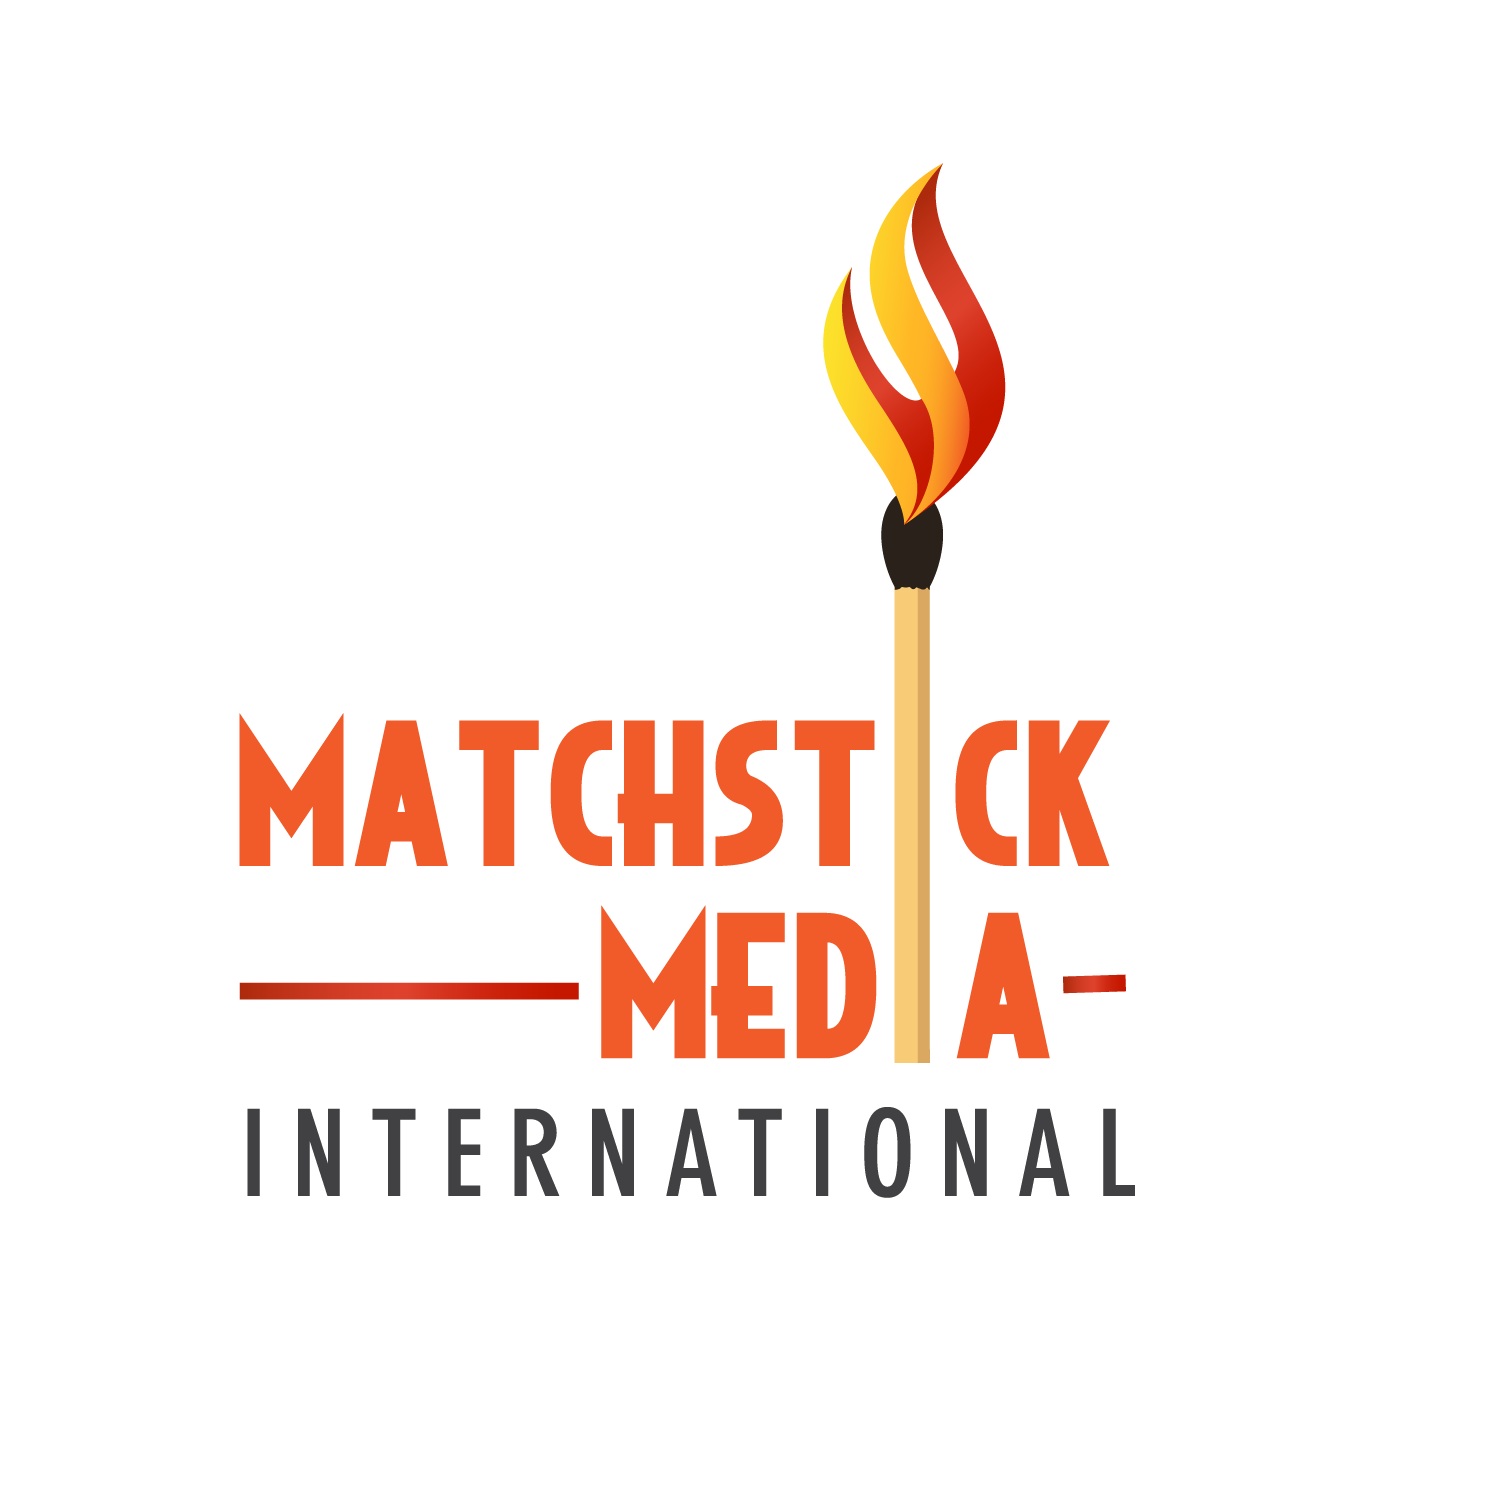 Matchstick Media International